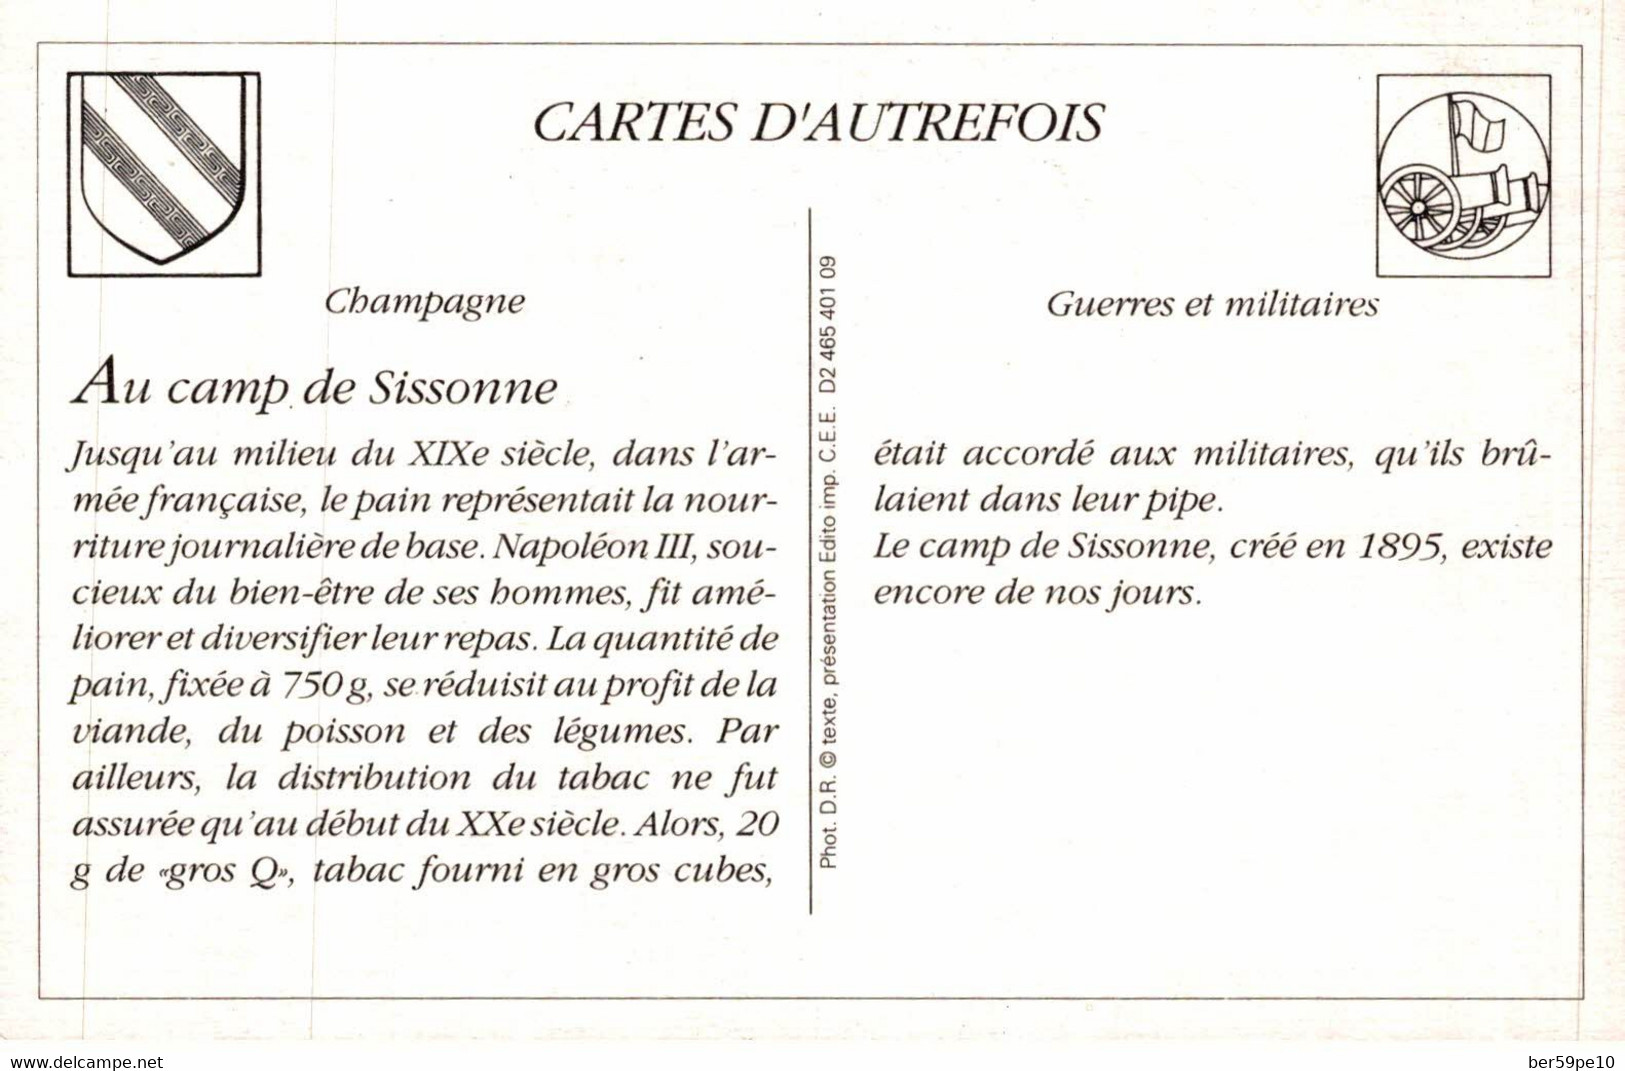 CARTE D'AUTREFOIS GUERRES ET MILITAIRES CHAMPAGNE AU CAMP DE SISSONNE - Champagne-Ardenne